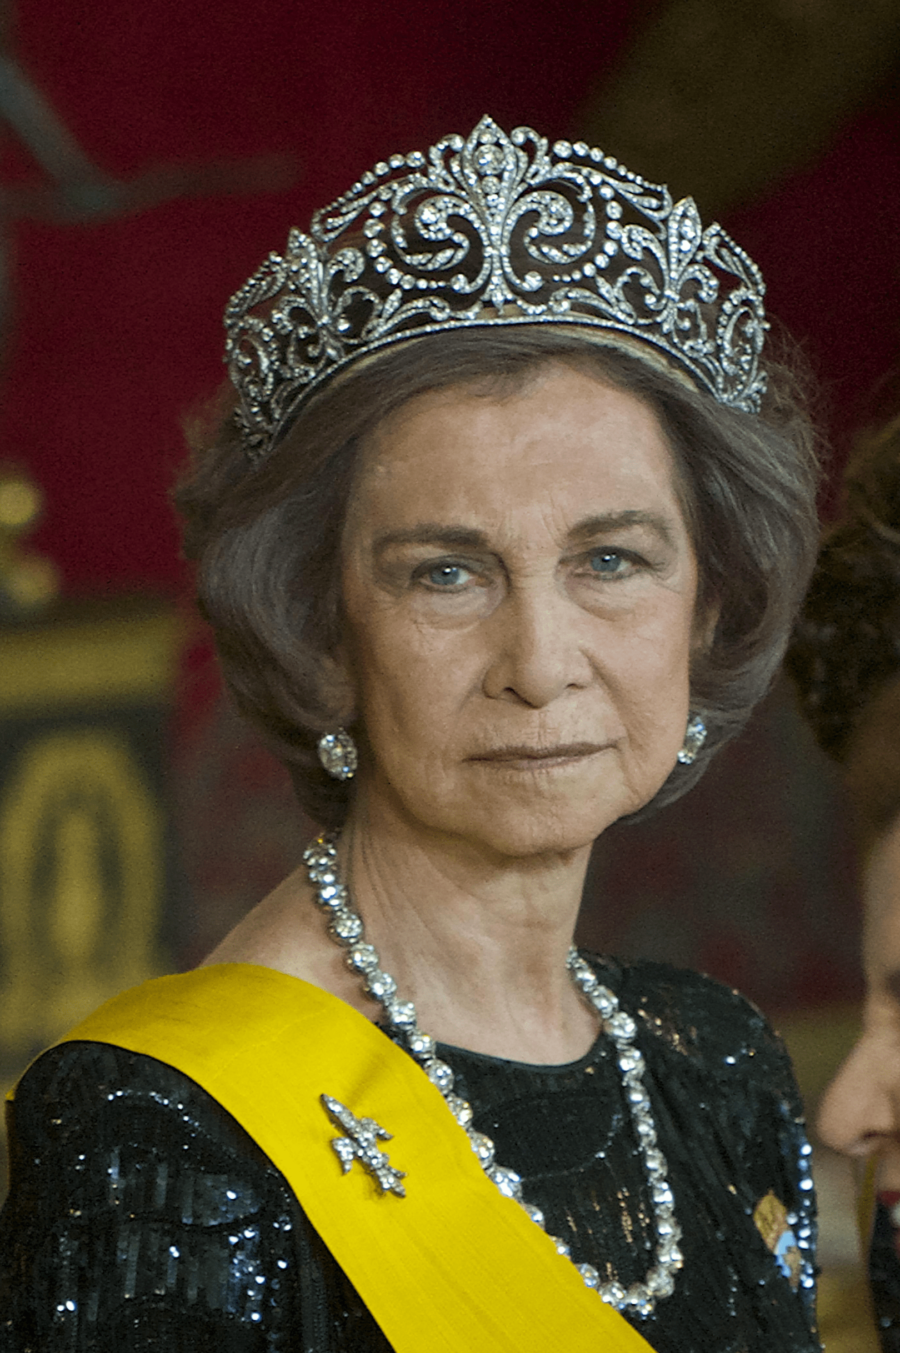 Koningin Sofia met het diadeem van koningin Ena en een fleur-de-lys broche Blog Zilver.nl